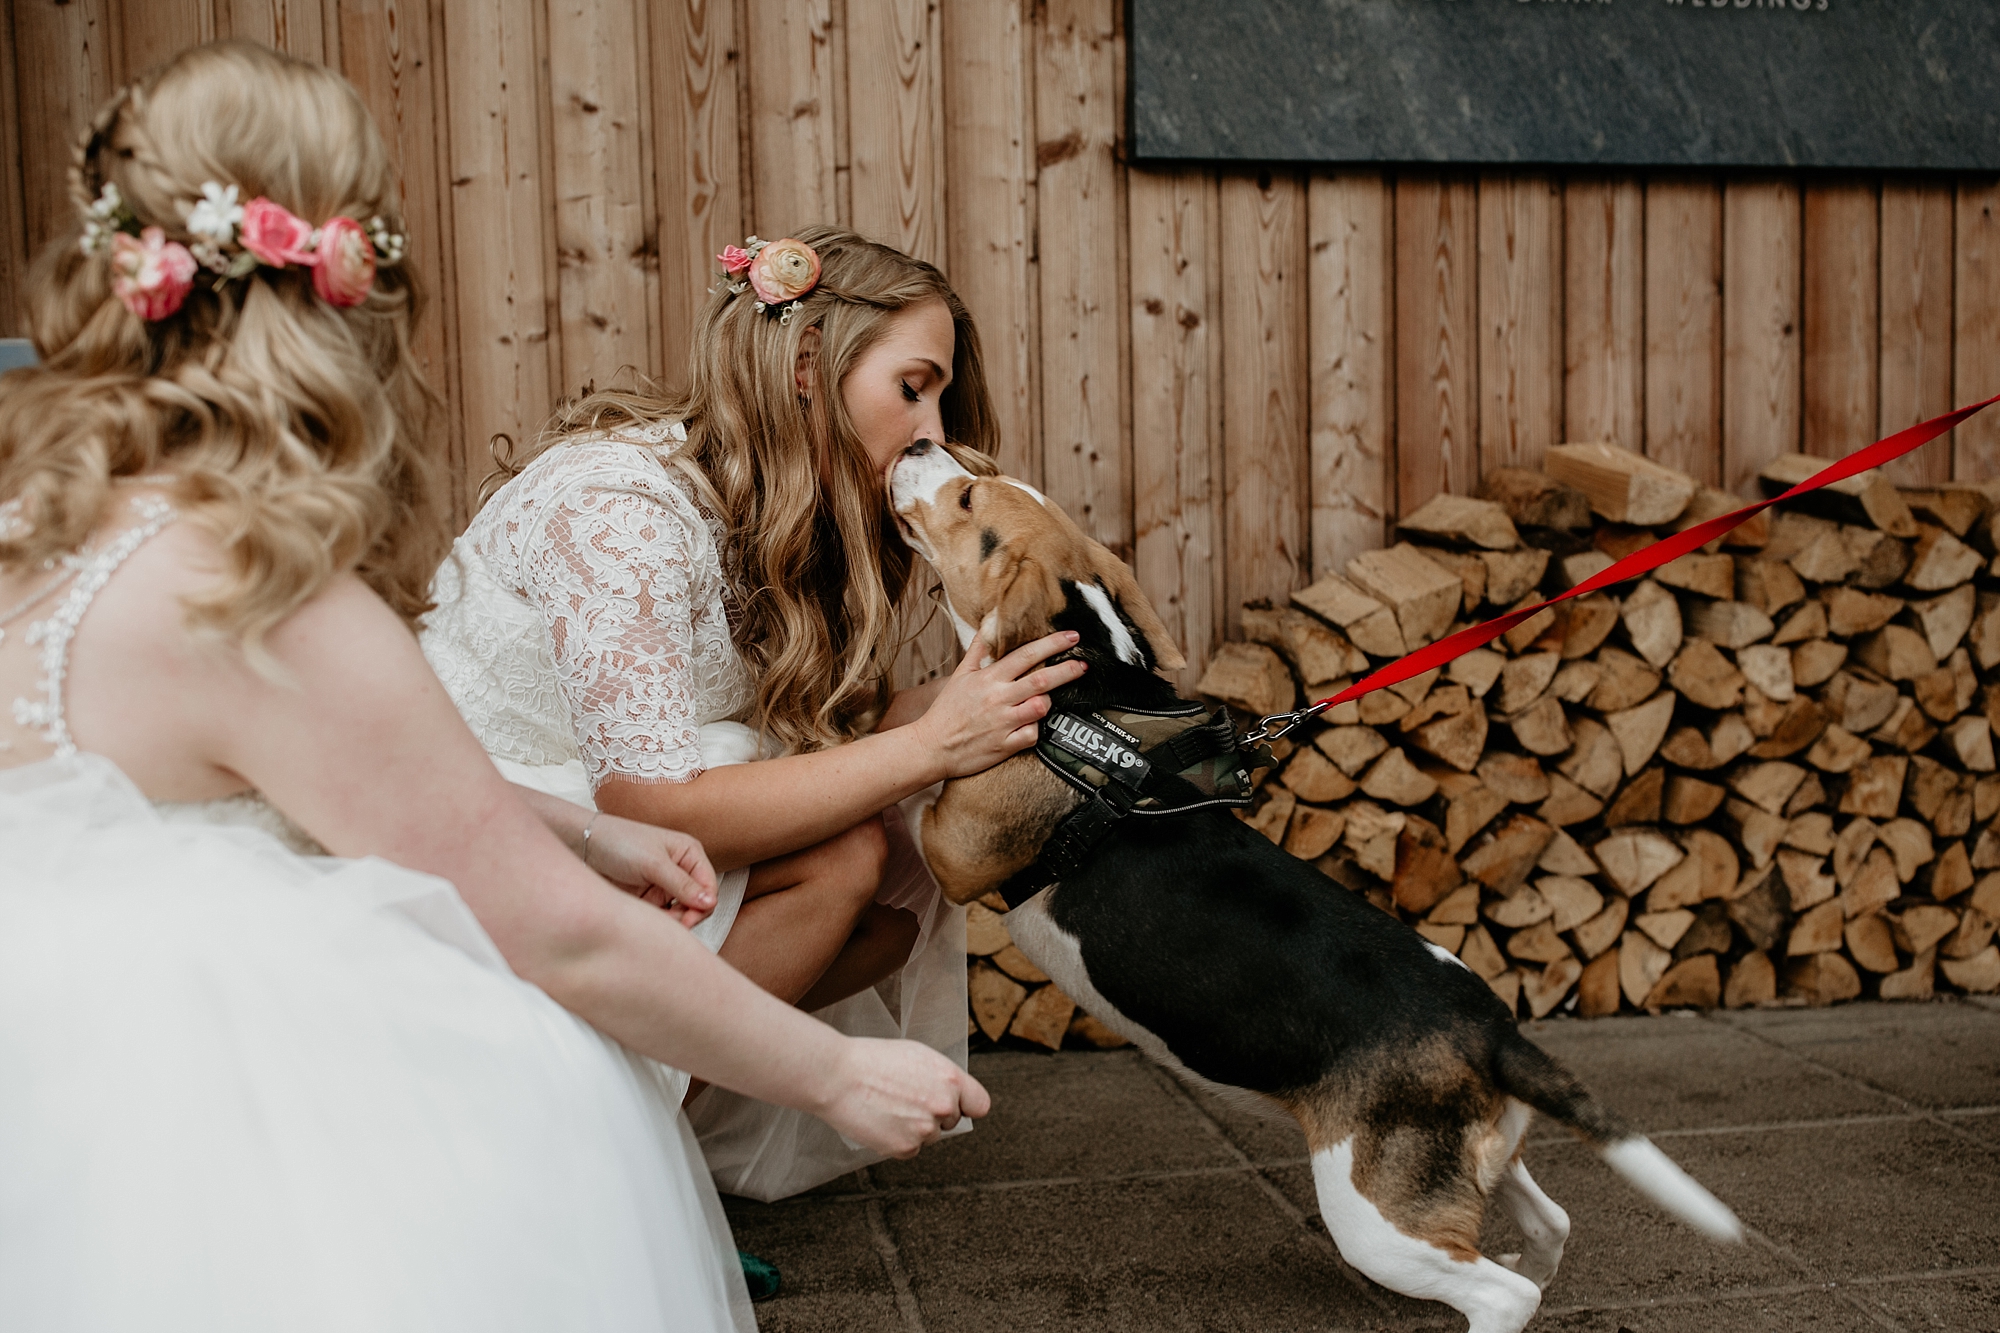 01 Pet dog at a wedding